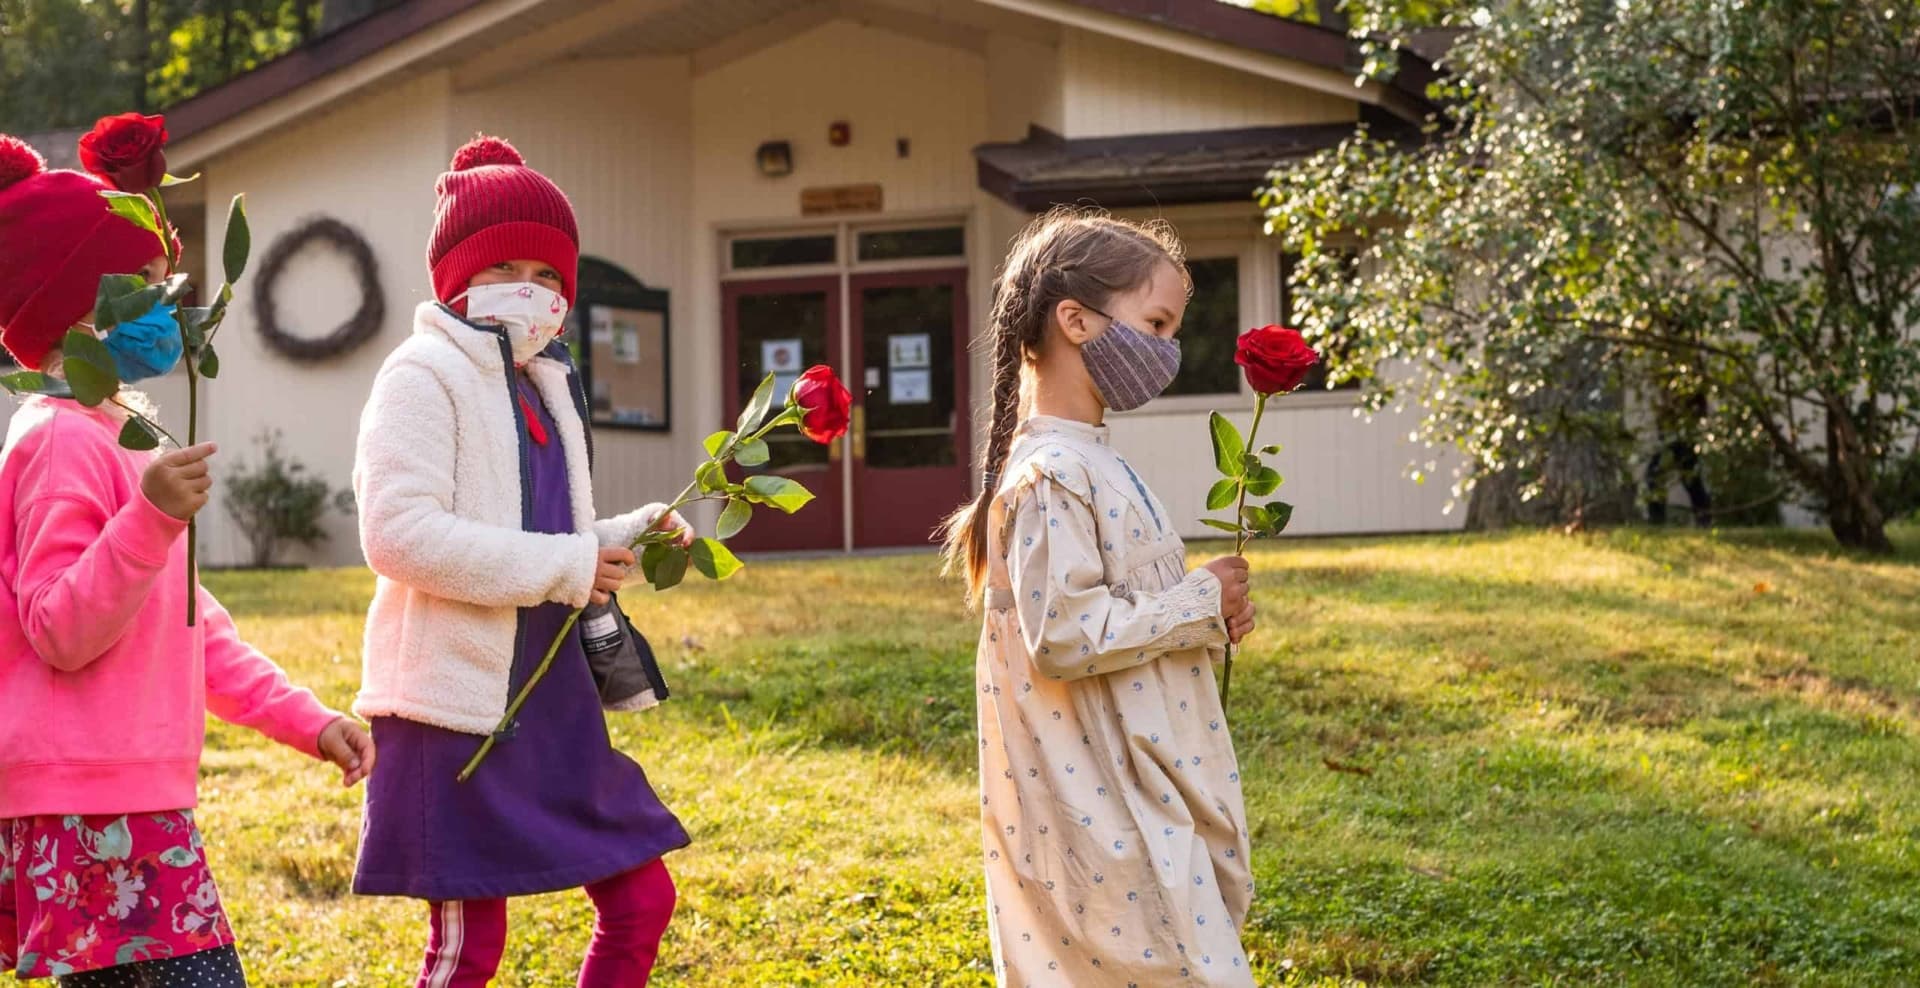 Girls walking holding roses.